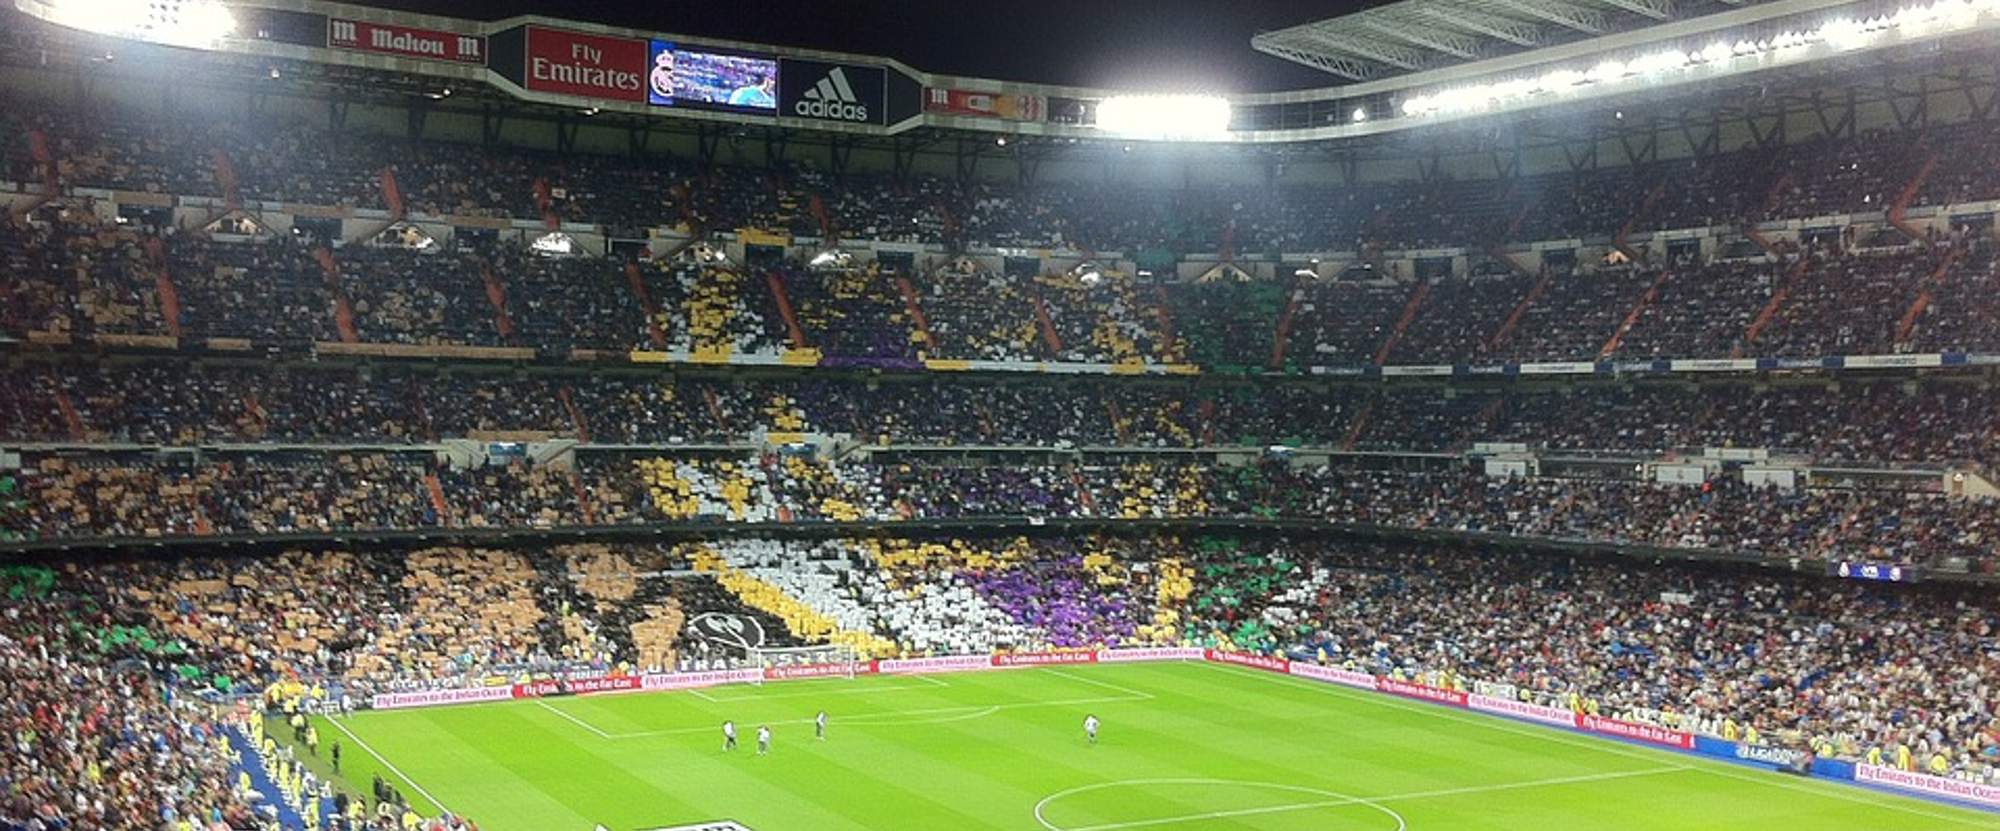 Real Madrid v Atlético de Madrid